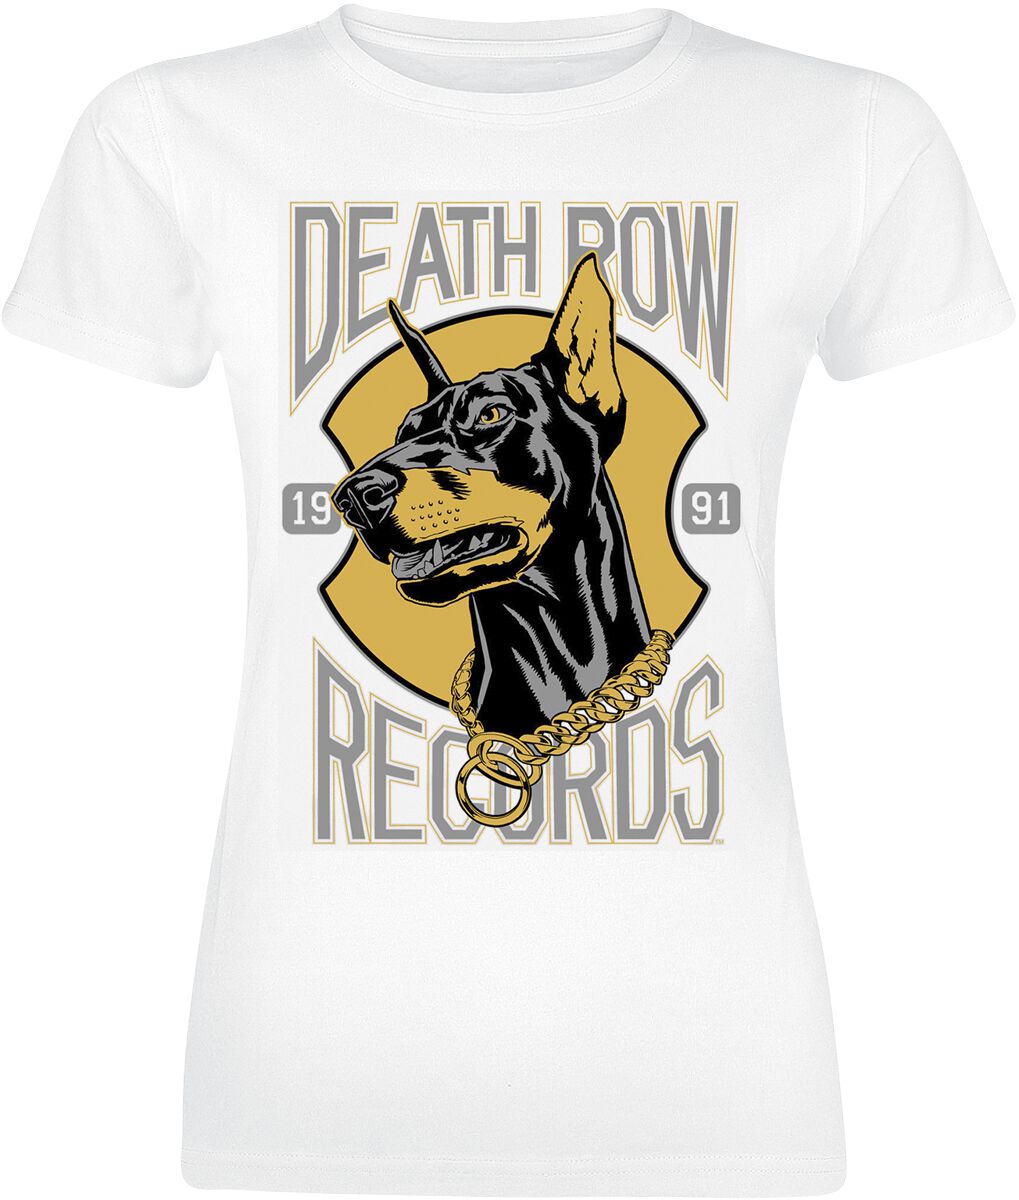 Death Row Records T-Shirt - Dog Logo - S bis XL - für Damen - Größe XL - weiß  - Lizenziertes Merchandise!